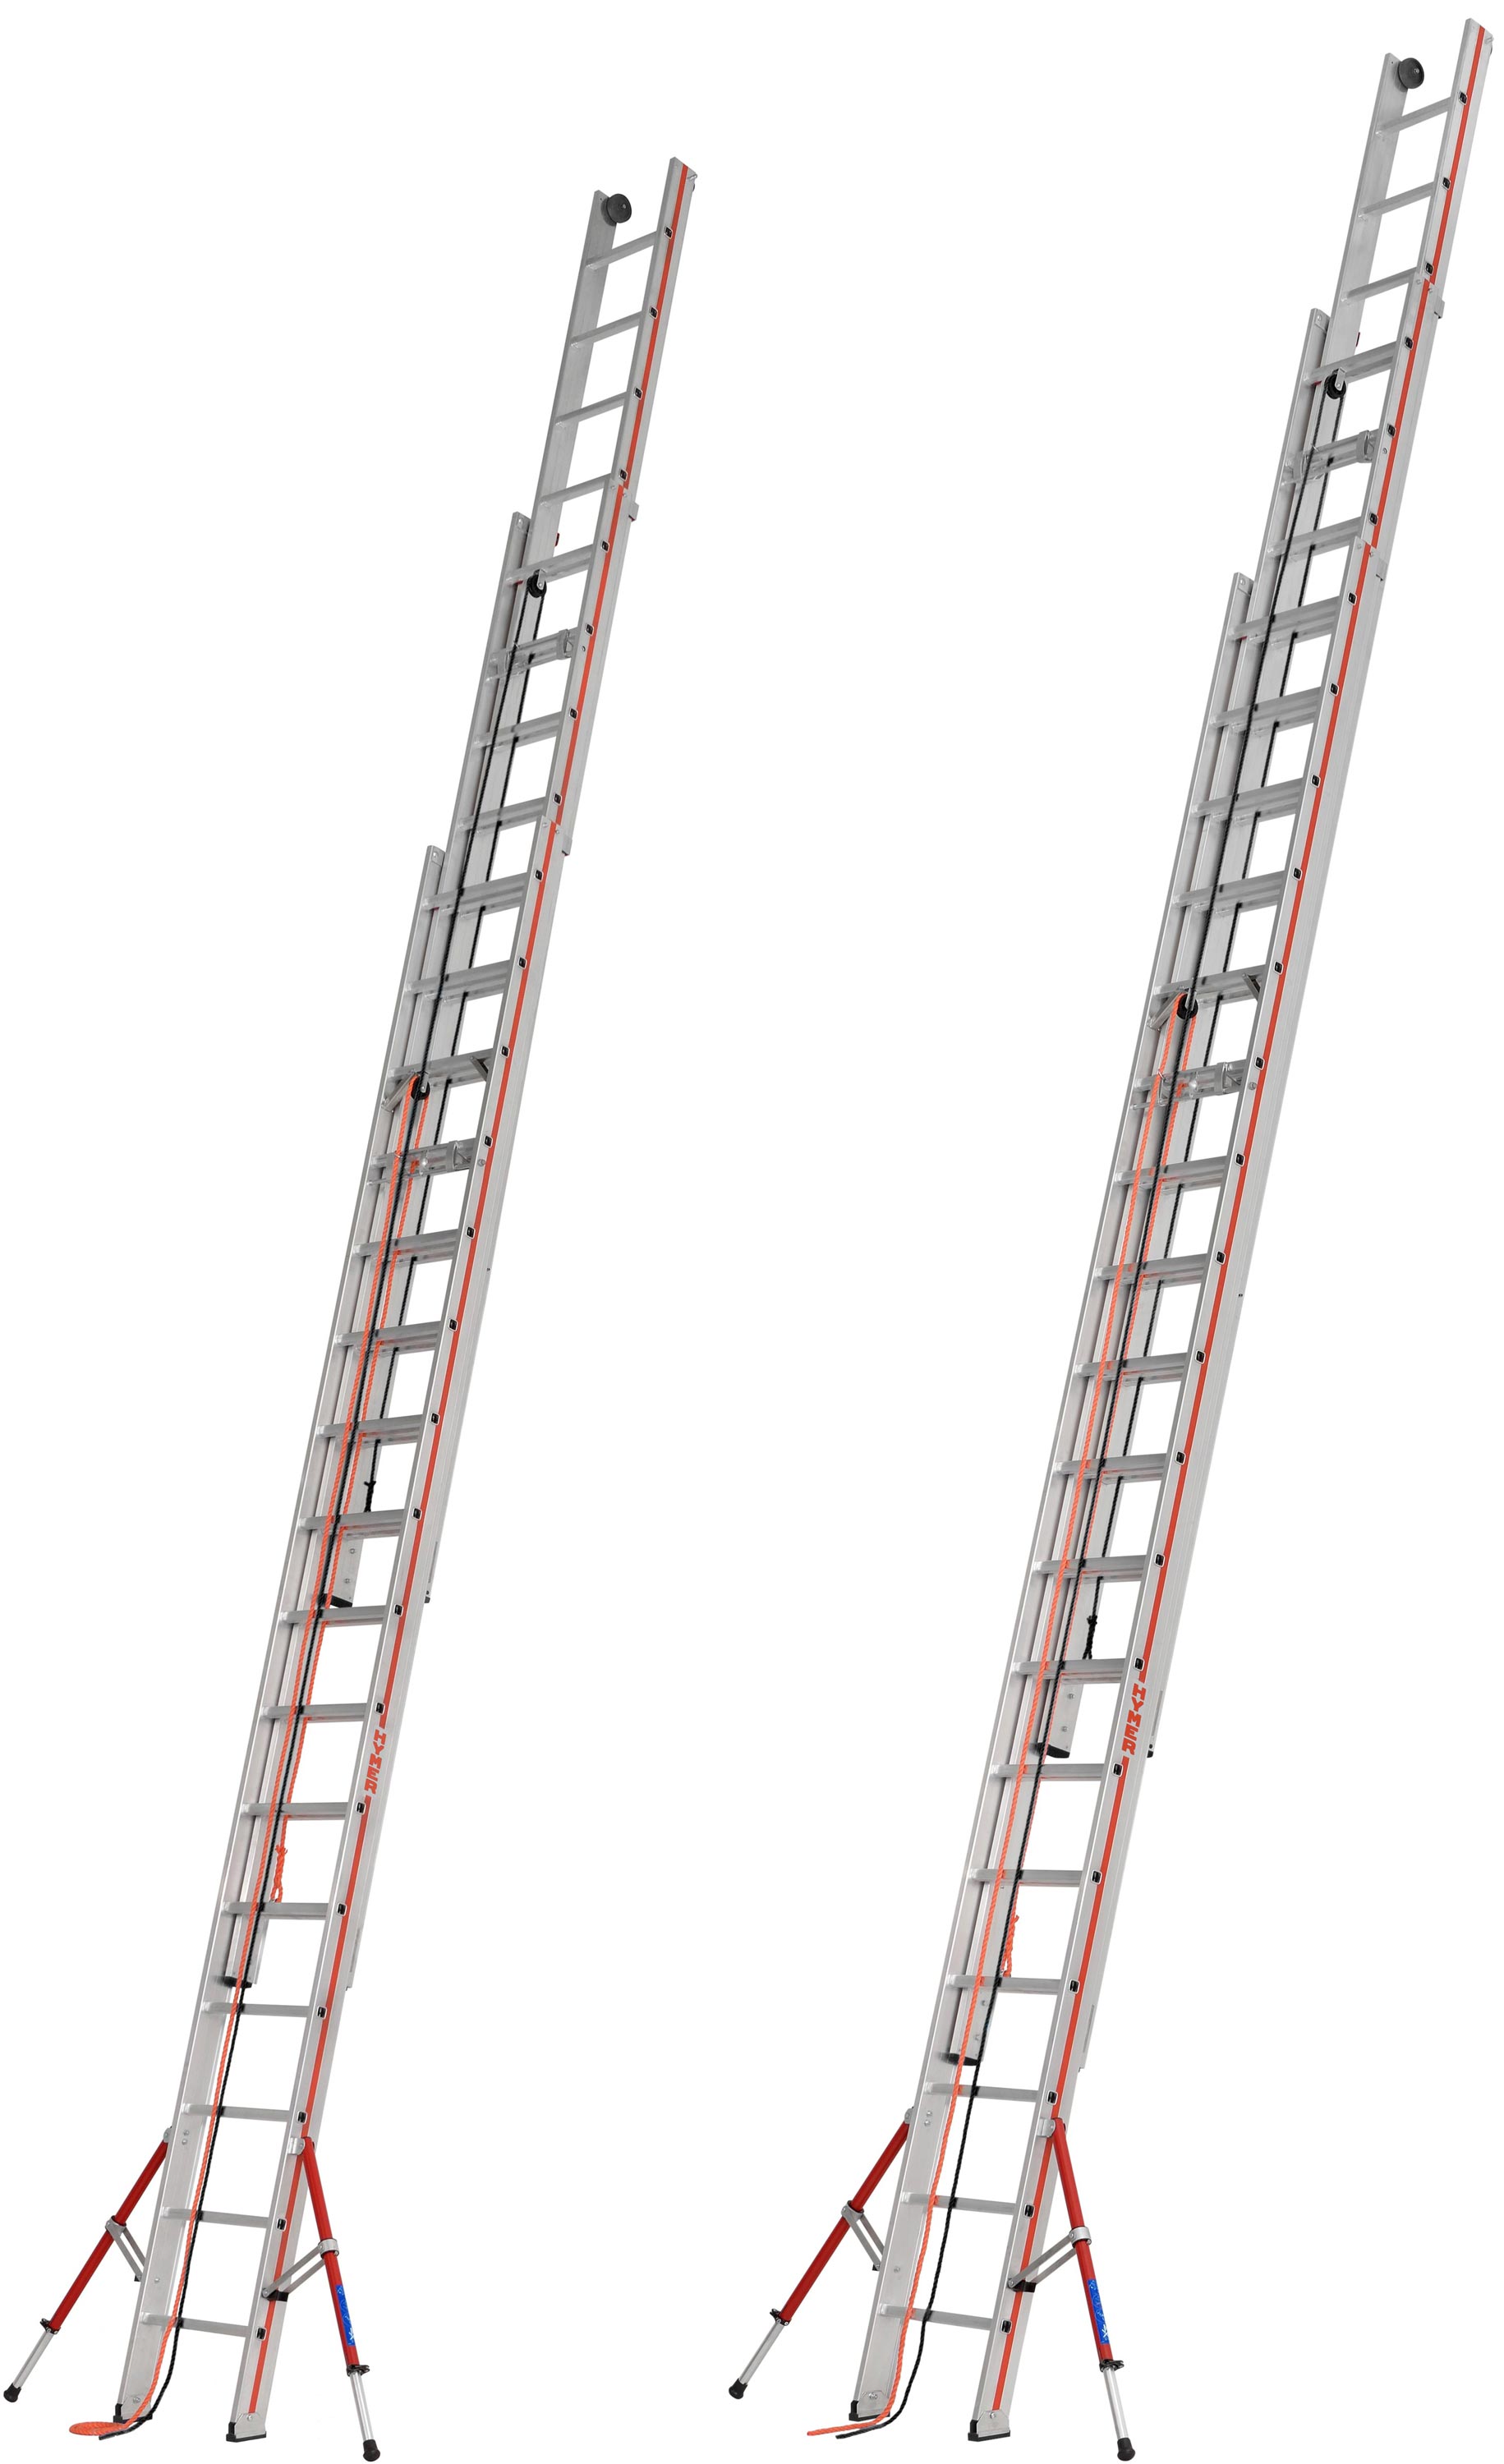 Hymer Seilzugleiter 3-teilig SC 60 Alu 3x14 - 3x18 Sprossen Leiter mit ausklappbaren Auslegern - Profiprogramm (HY-C-626142) Bild-01